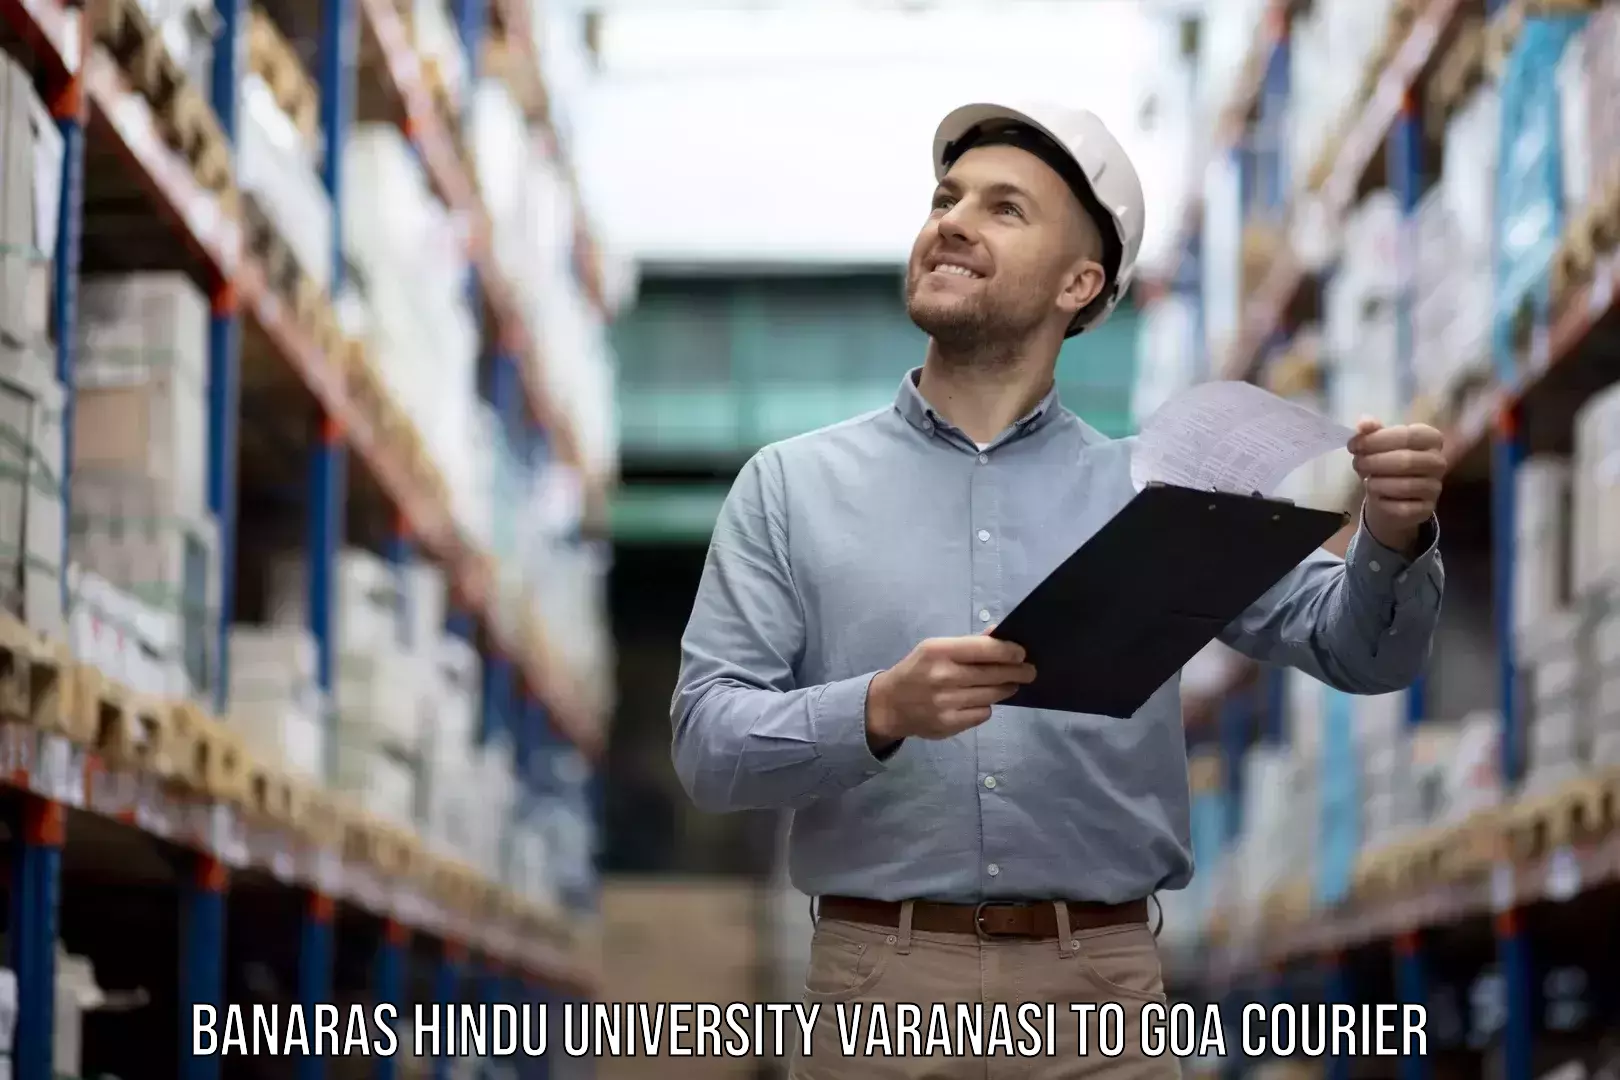 Door-to-door relocation services Banaras Hindu University Varanasi to IIT Goa